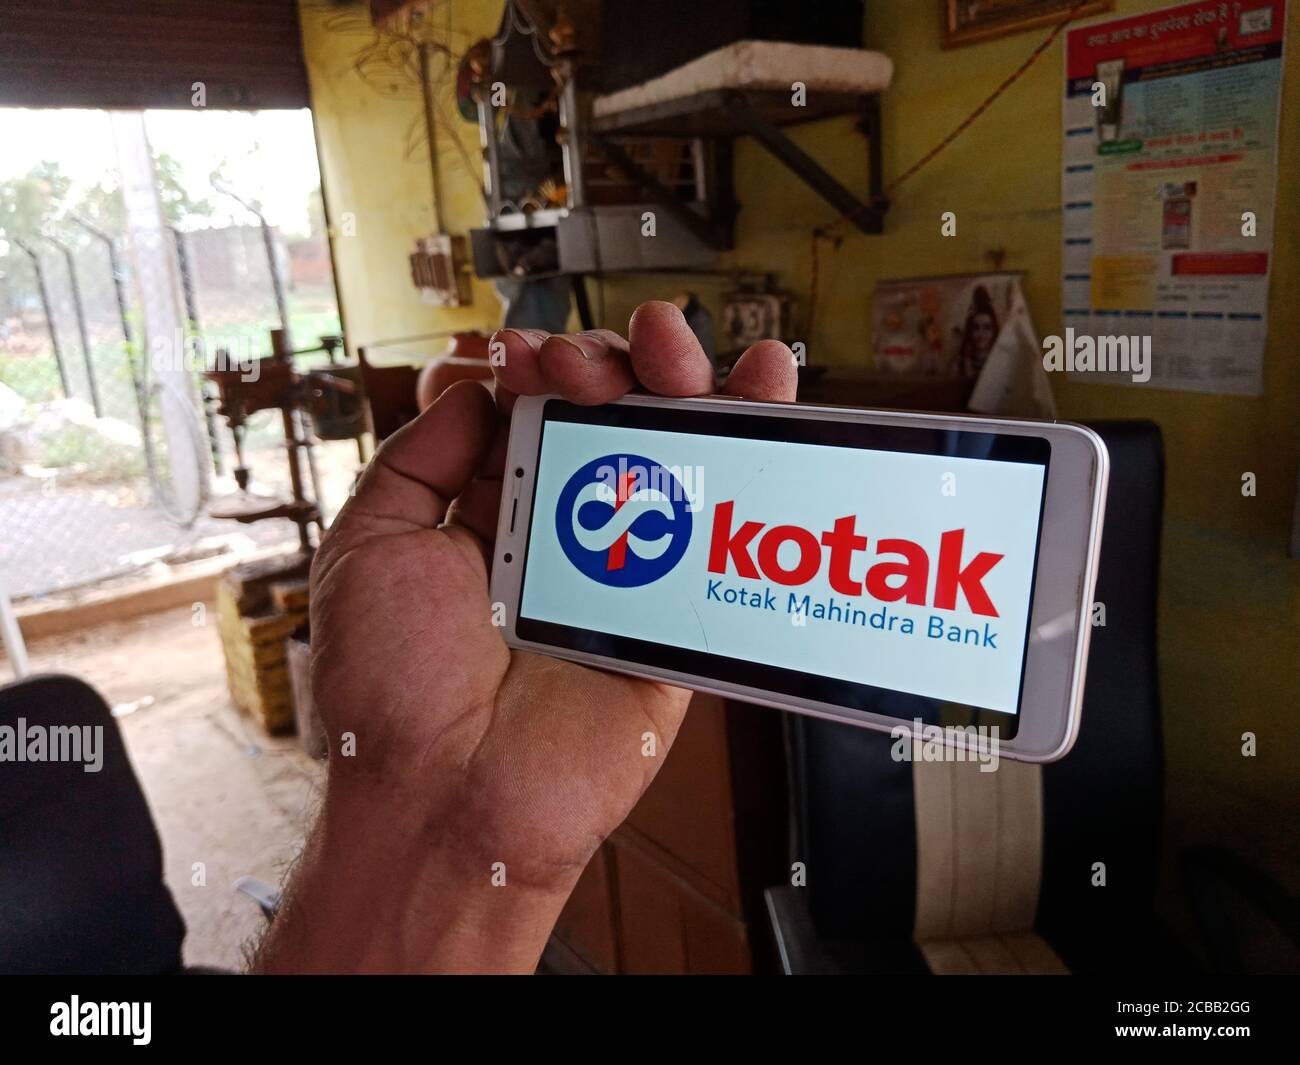 DISTRETTO KATNI, INDIA - 02 GIUGNO 2020: Un uomo indiano che detiene smartphone con visualizzazione del logo della banca kotak mahindra sullo schermo, istruzione bancaria moderna Foto Stock